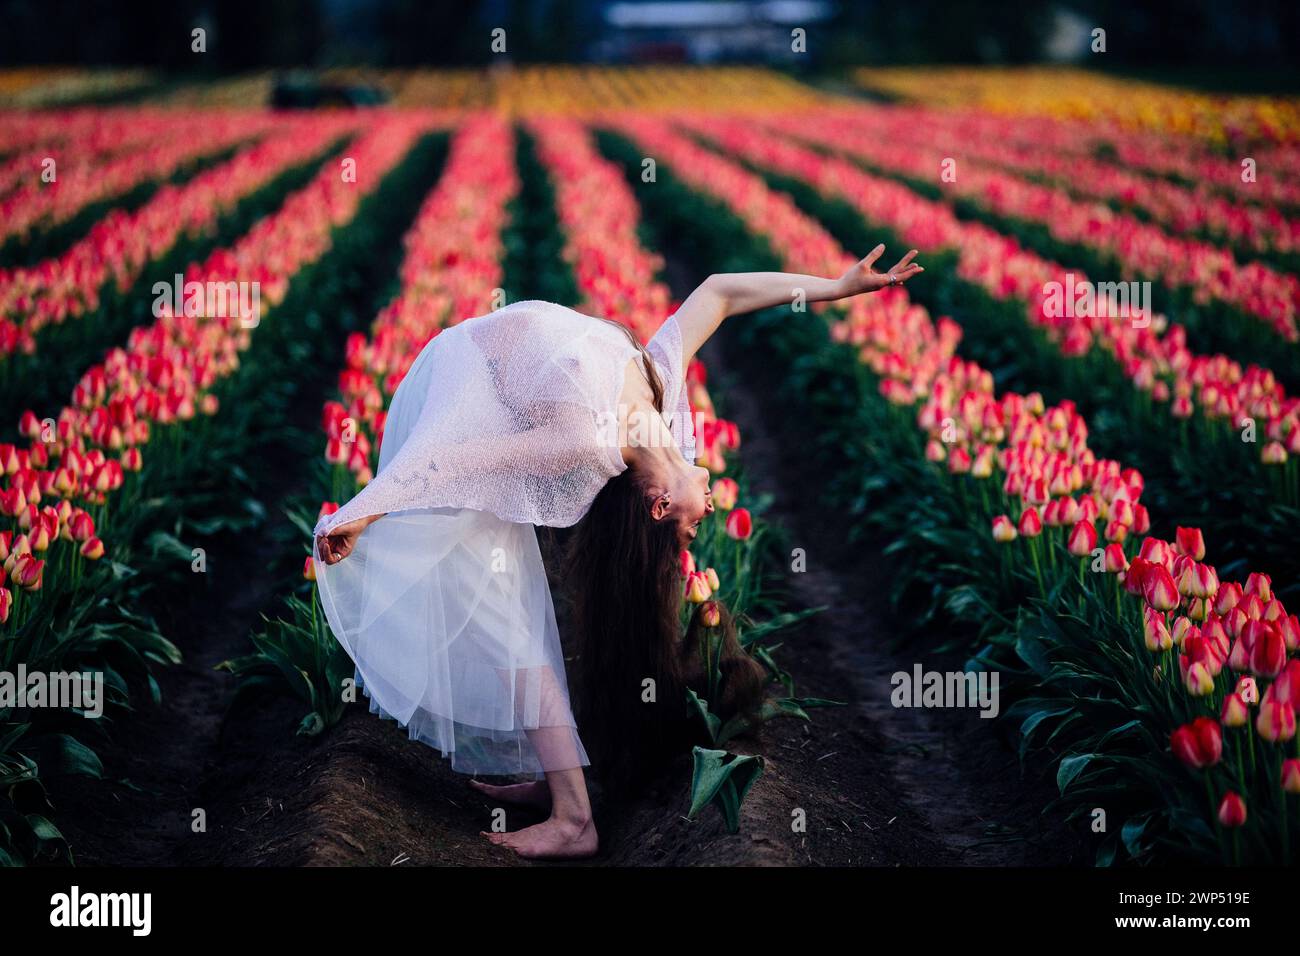 Brune aux cheveux longs se pliant vers l'arrière dans un vaste champ de tulipes Banque D'Images